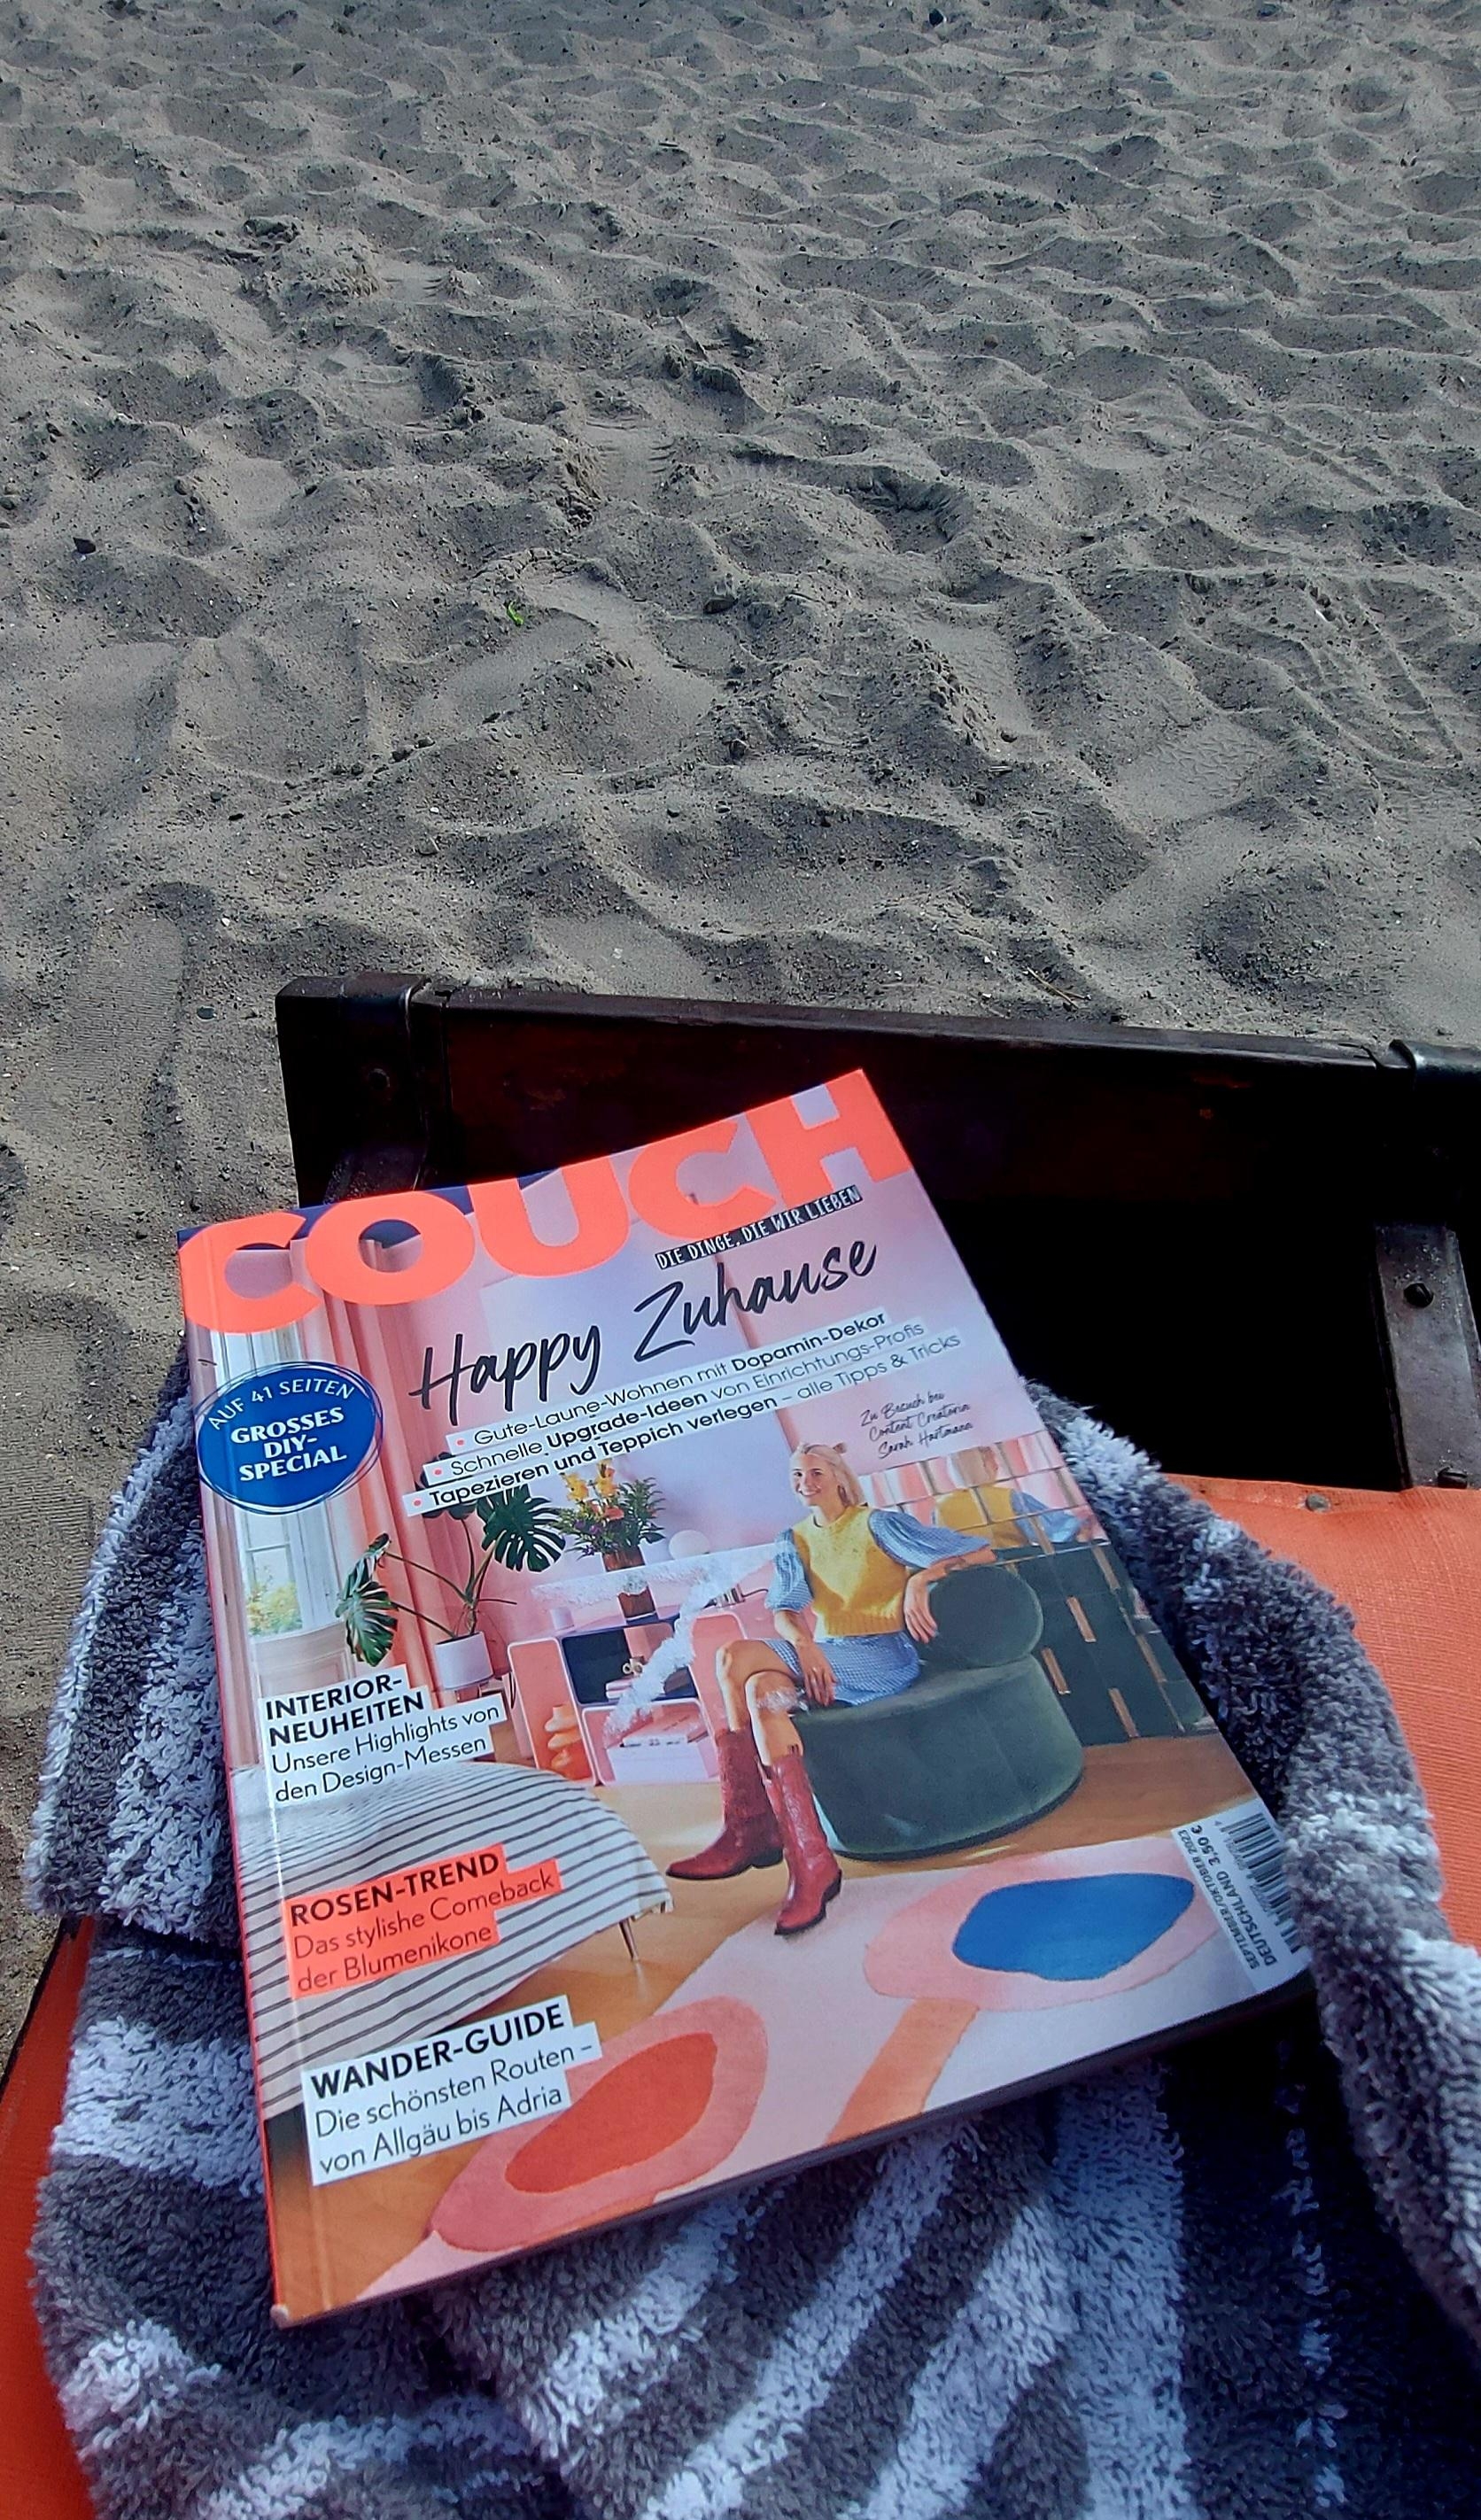 Die gehört einfach zu einem guten Strandtag dazu

#couchmag #couchstyle #strandkorb #strandtag #entspannt